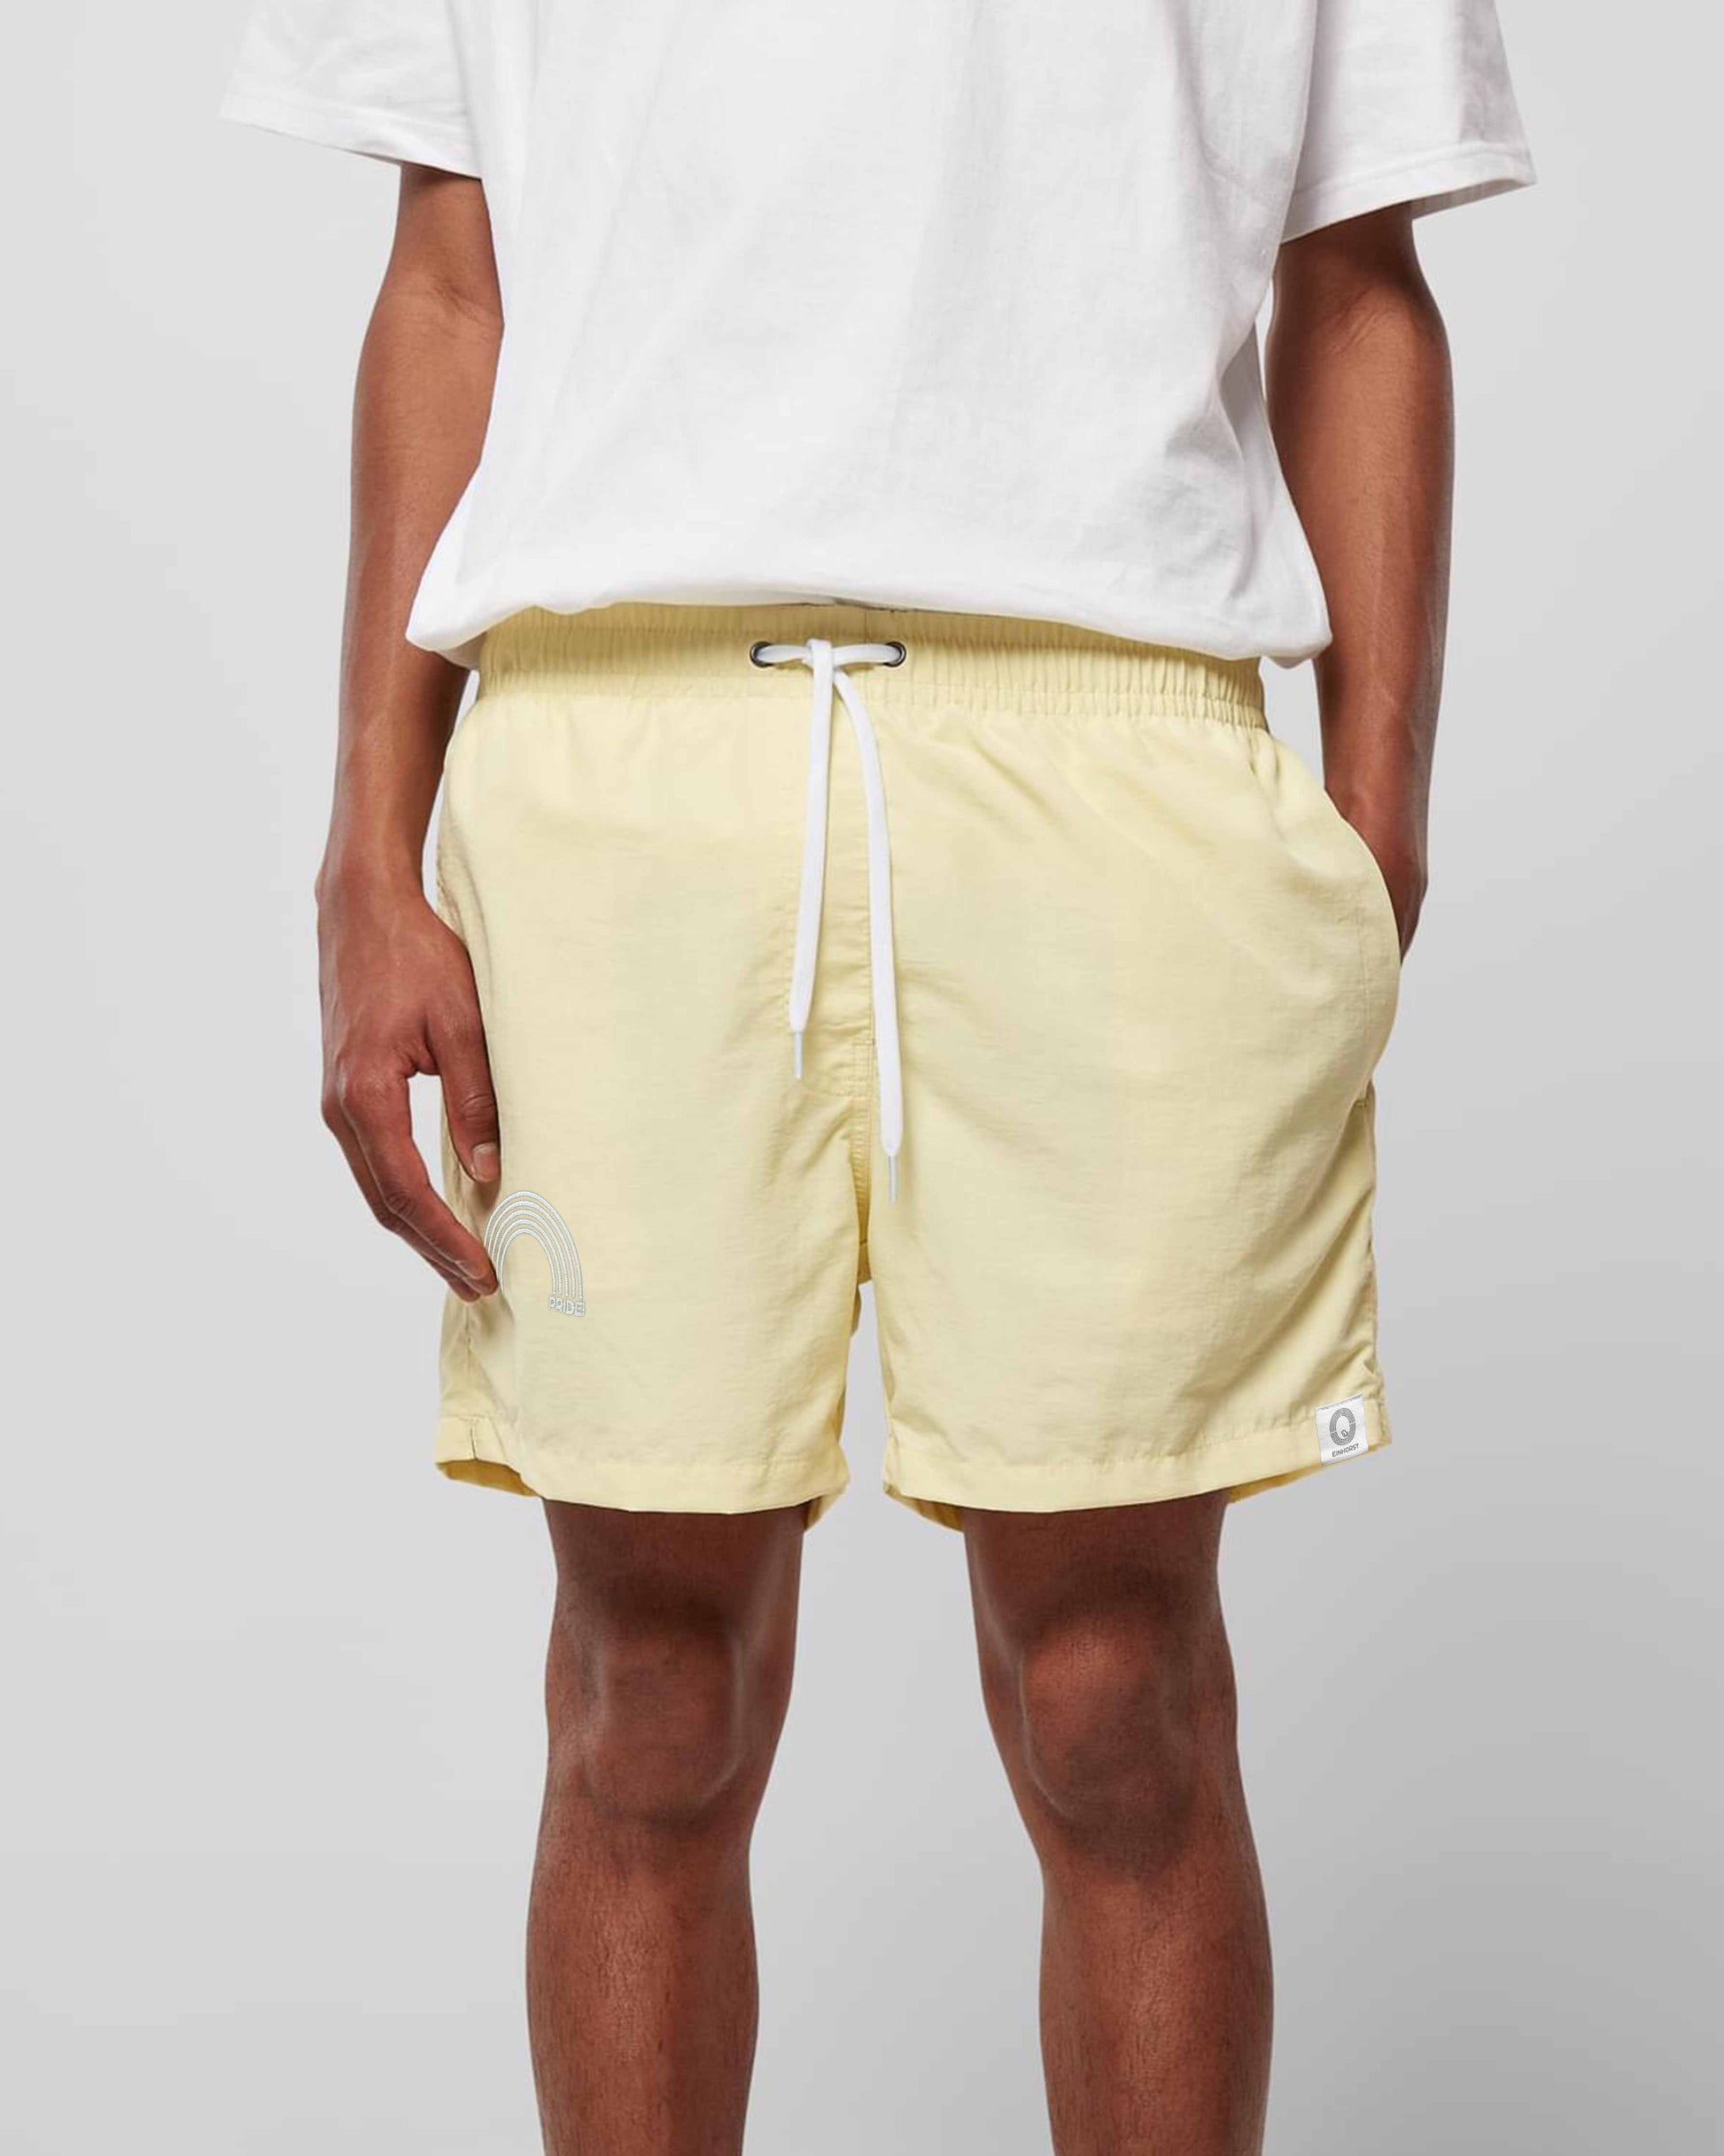 EINHORST® Schwimm- & Sportshorts mit dem Motiv "pride-Regenbogen" in der Farbe "Soft Yellow", Bild von einer männlichen Person von vorne, die die Shorts trägt